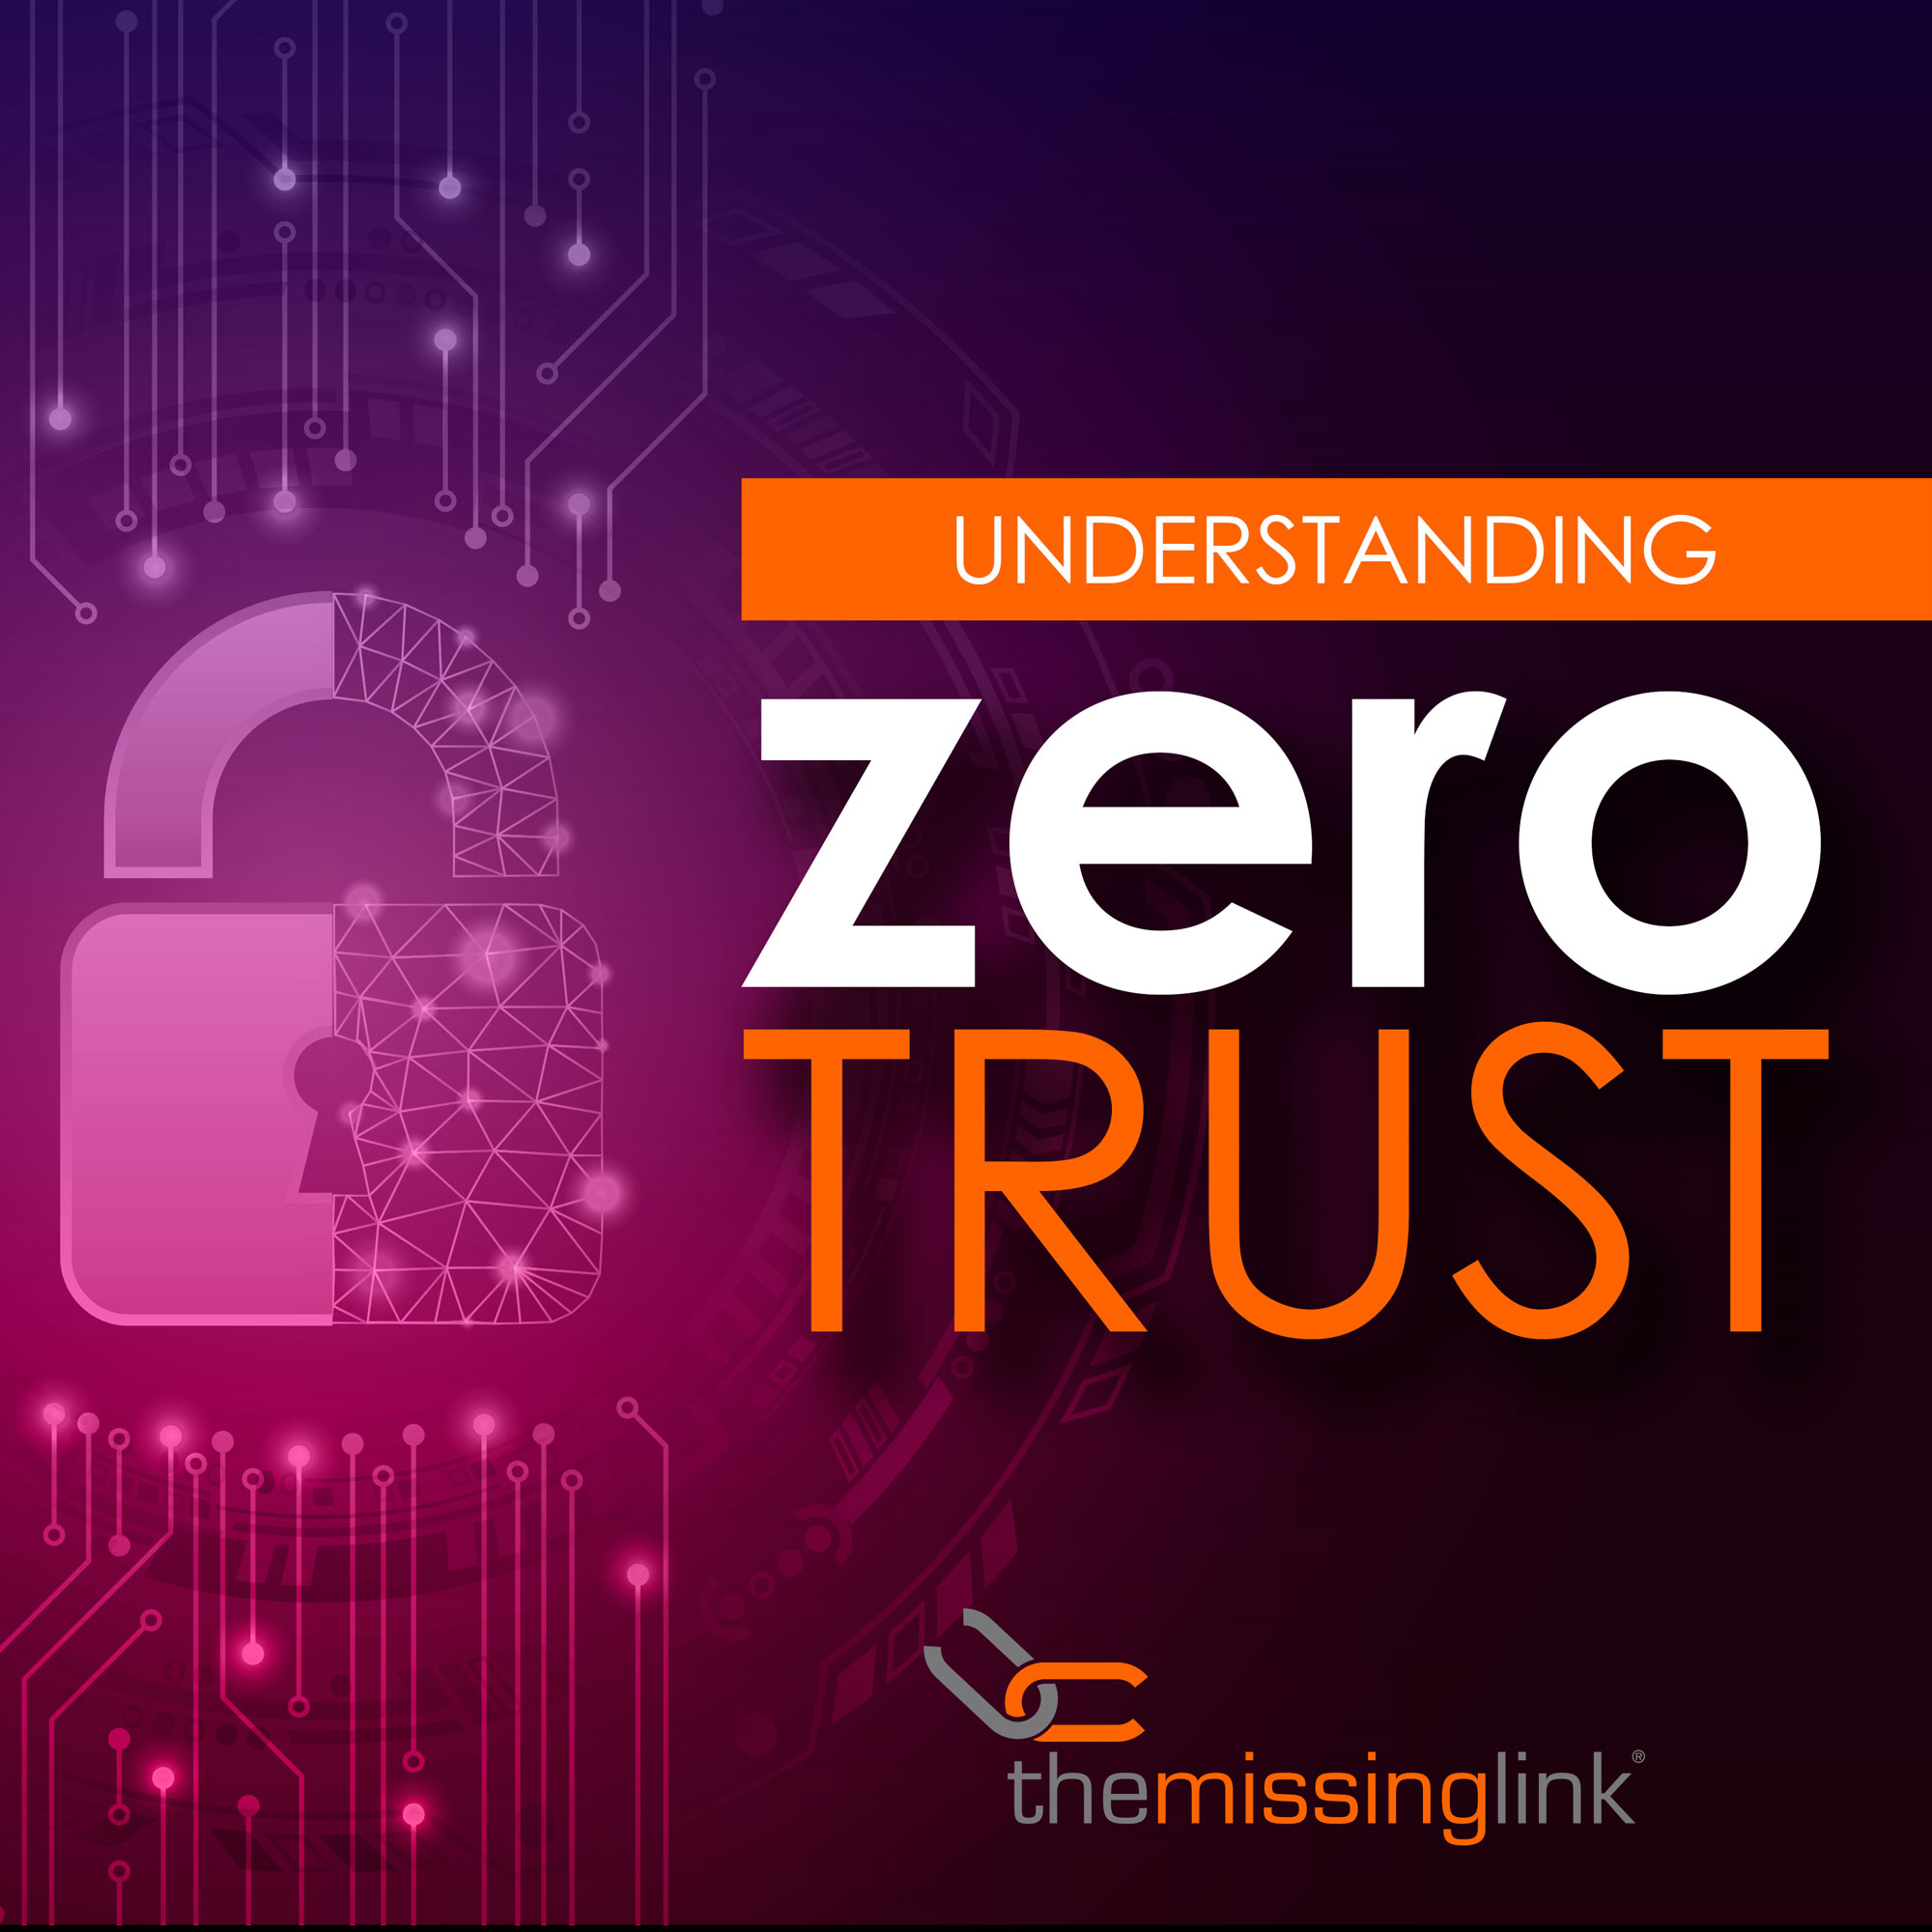 What is Zero Trust?